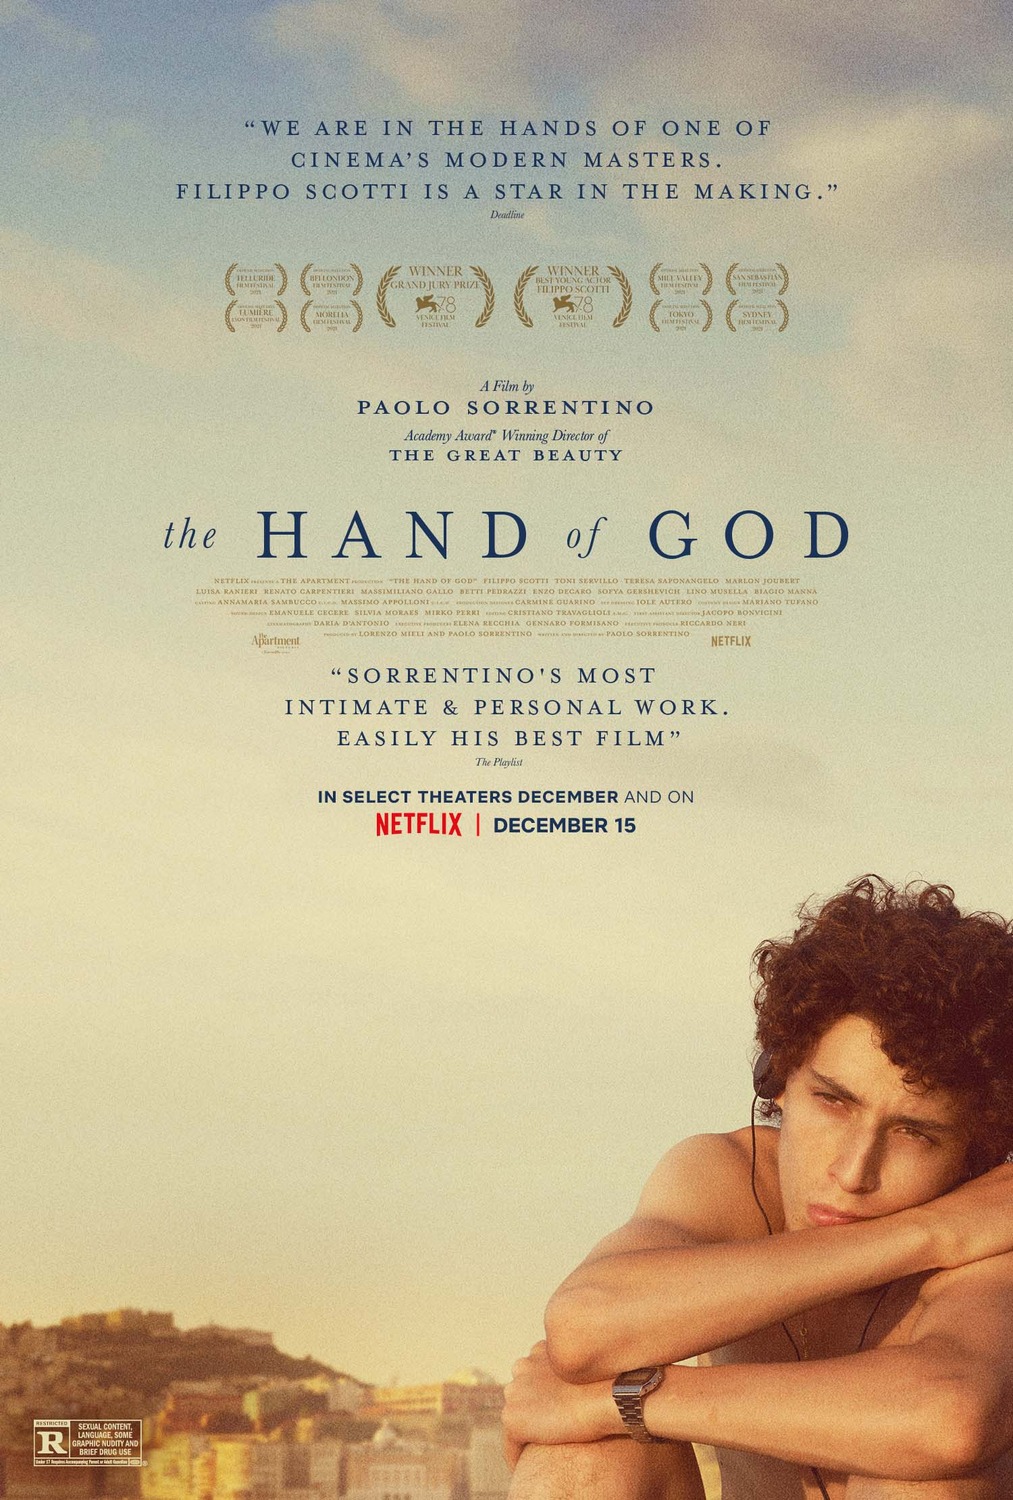 Extra Large Movie Poster Image for È stata la mano di Dio (#5 of 5)